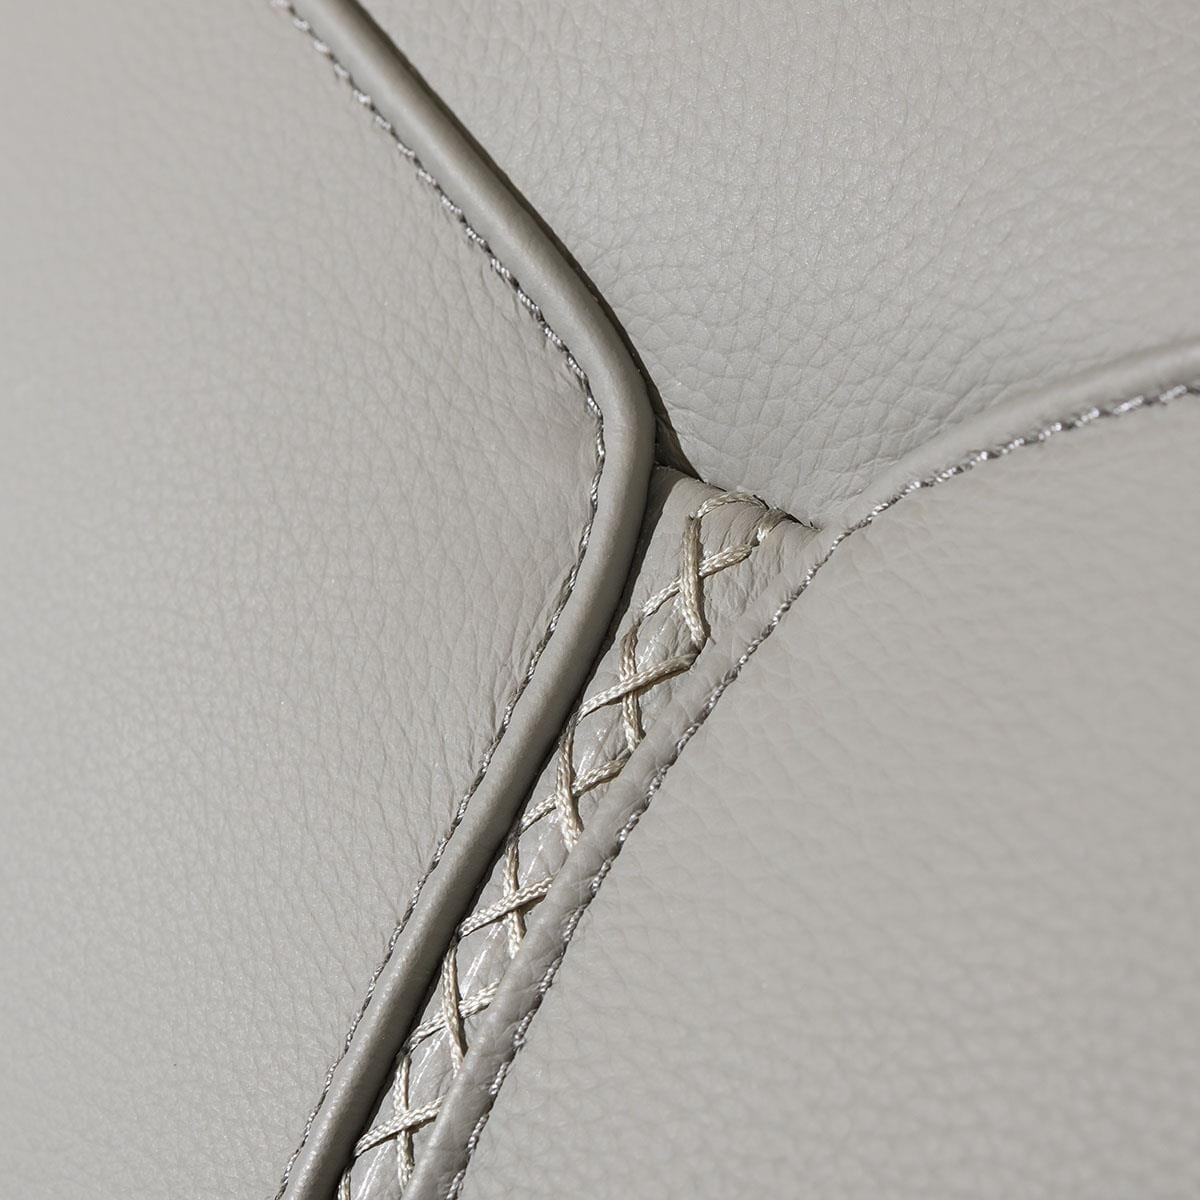 Quatropi Reggie Recliner 2 Seater Leather Sofa Grey